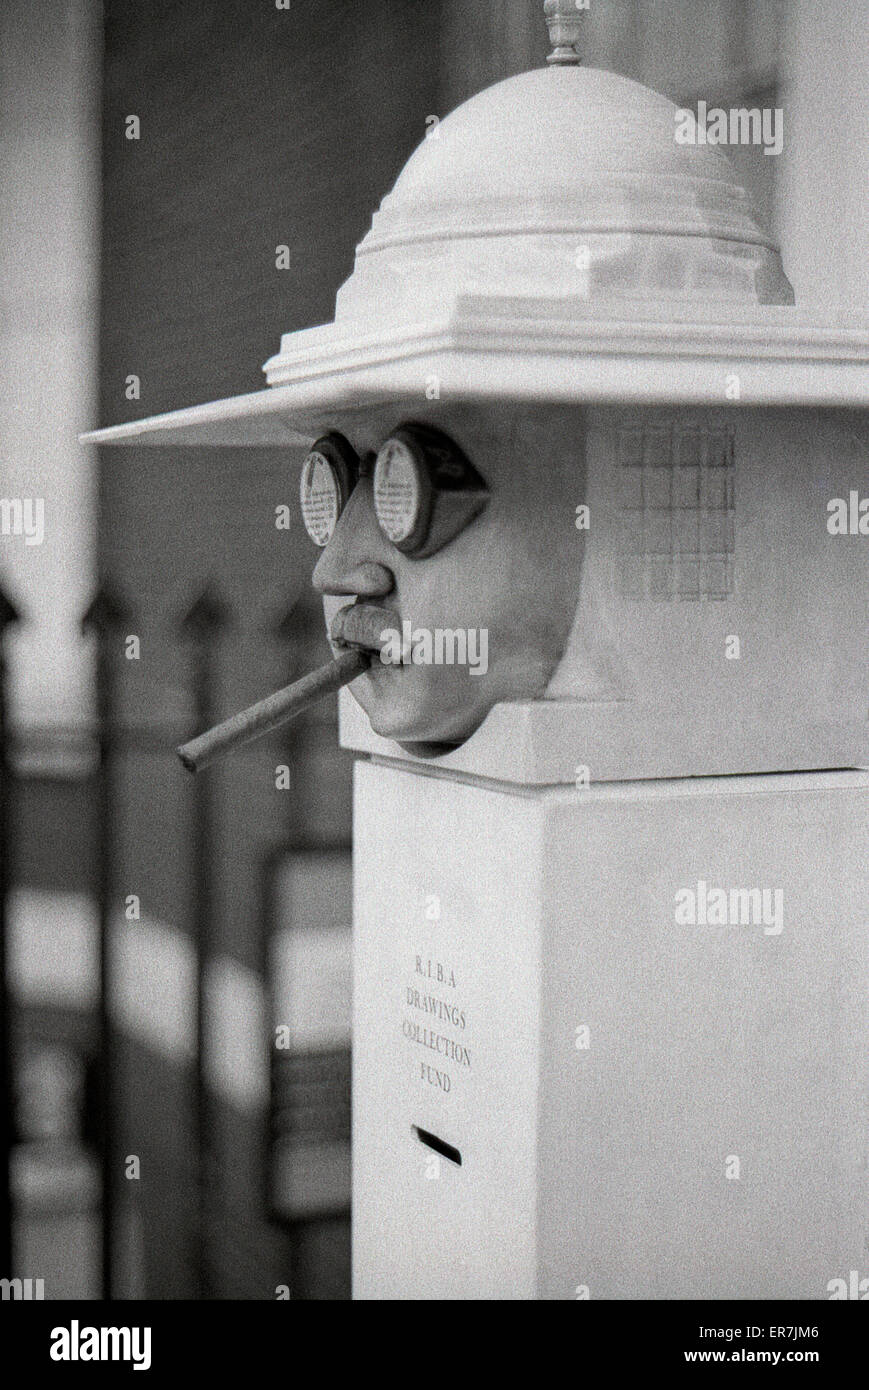 Architekt Lutyens Büste außerhalb Architekt Cedric Price Ausstellung "Das sich wandelnde Image' an der RIBA Heinz Galerie Portman Square London England UK 1975 KATHY DEWITT Stockfoto